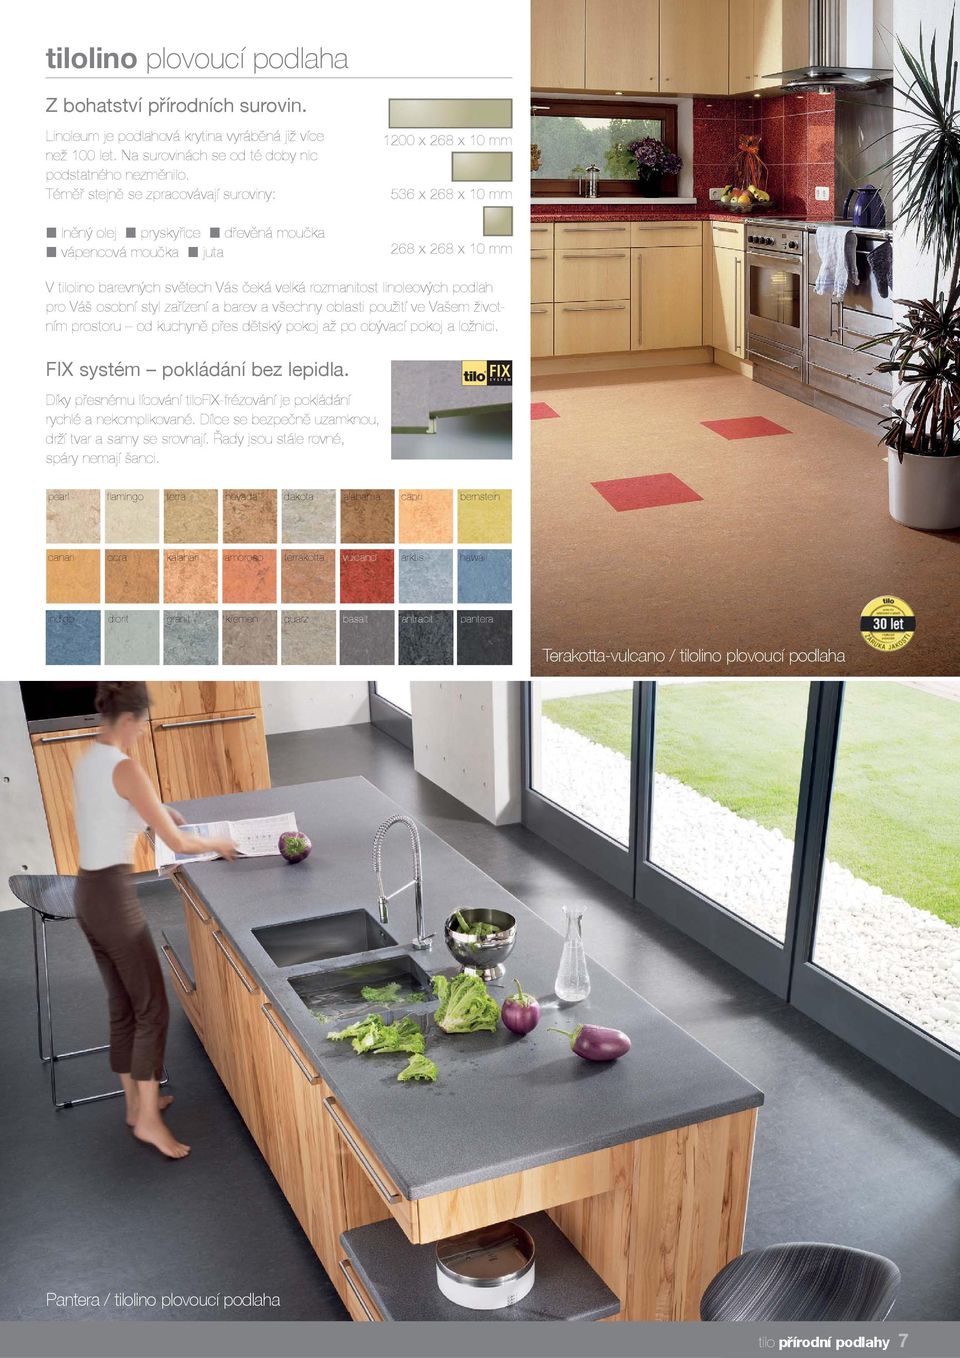 rozmanitost linoleových podlah pro Váš osobní styl zařízení a barev a všechny oblasti použití ve Vašem životním prostoru od kuchyně přes dětský pokoj až po obývací pokoj a ložnici.